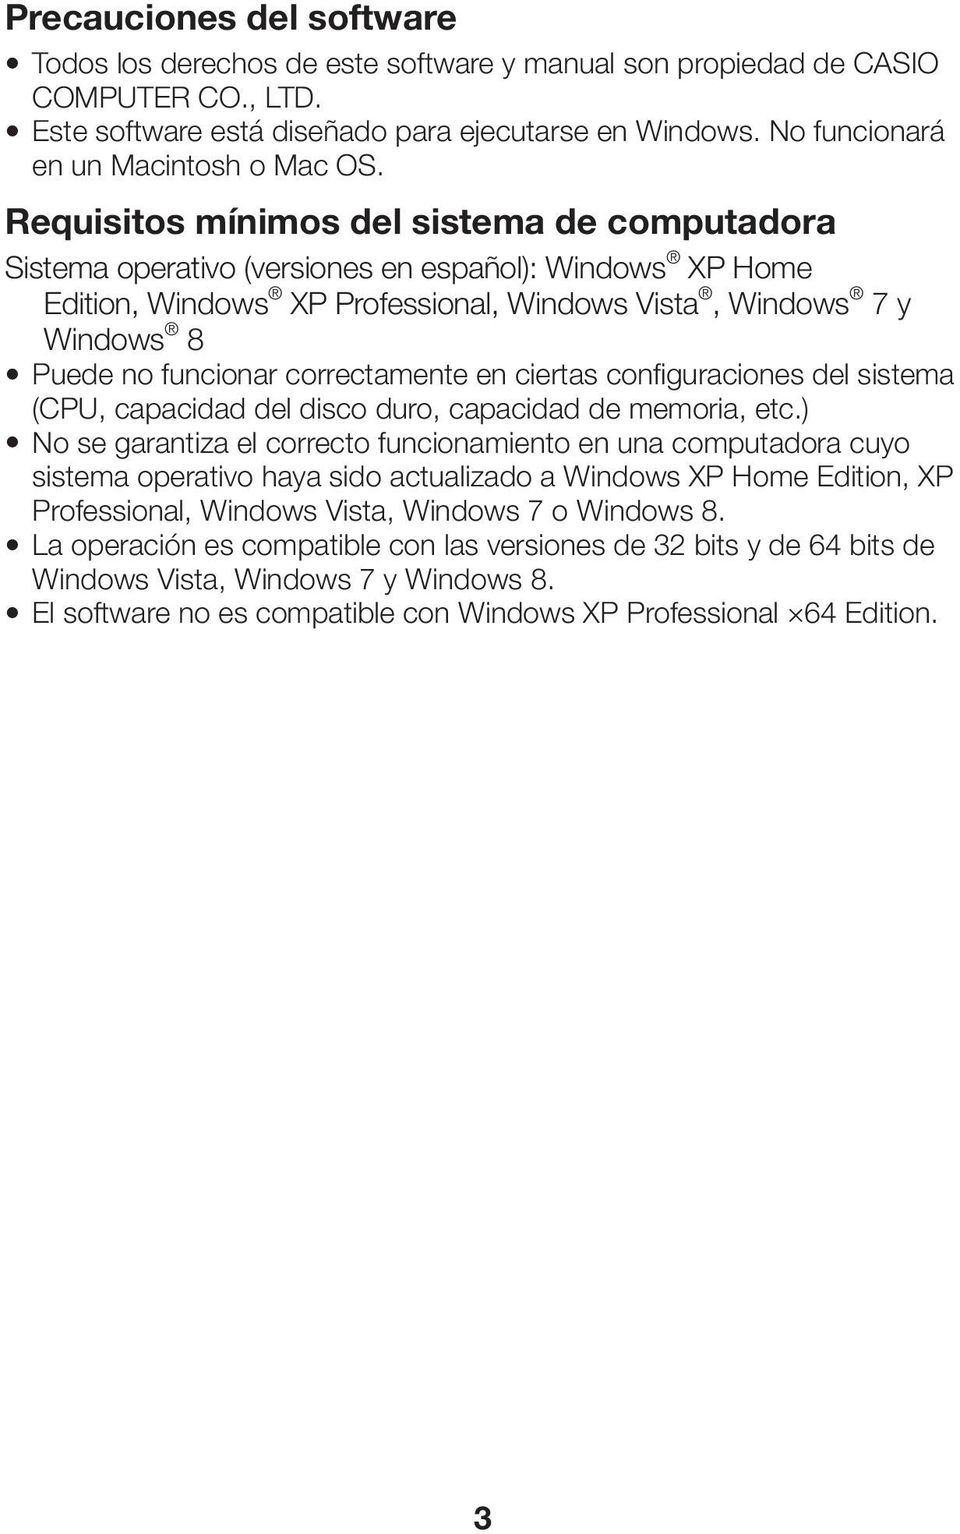 Requisitos mínimos del sistema de computadora Sistema operativo (versiones en español): Windows XP Home Edition, Windows XP Professional, Windows Vista, Windows 7 y Windows 8 Puede no funcionar